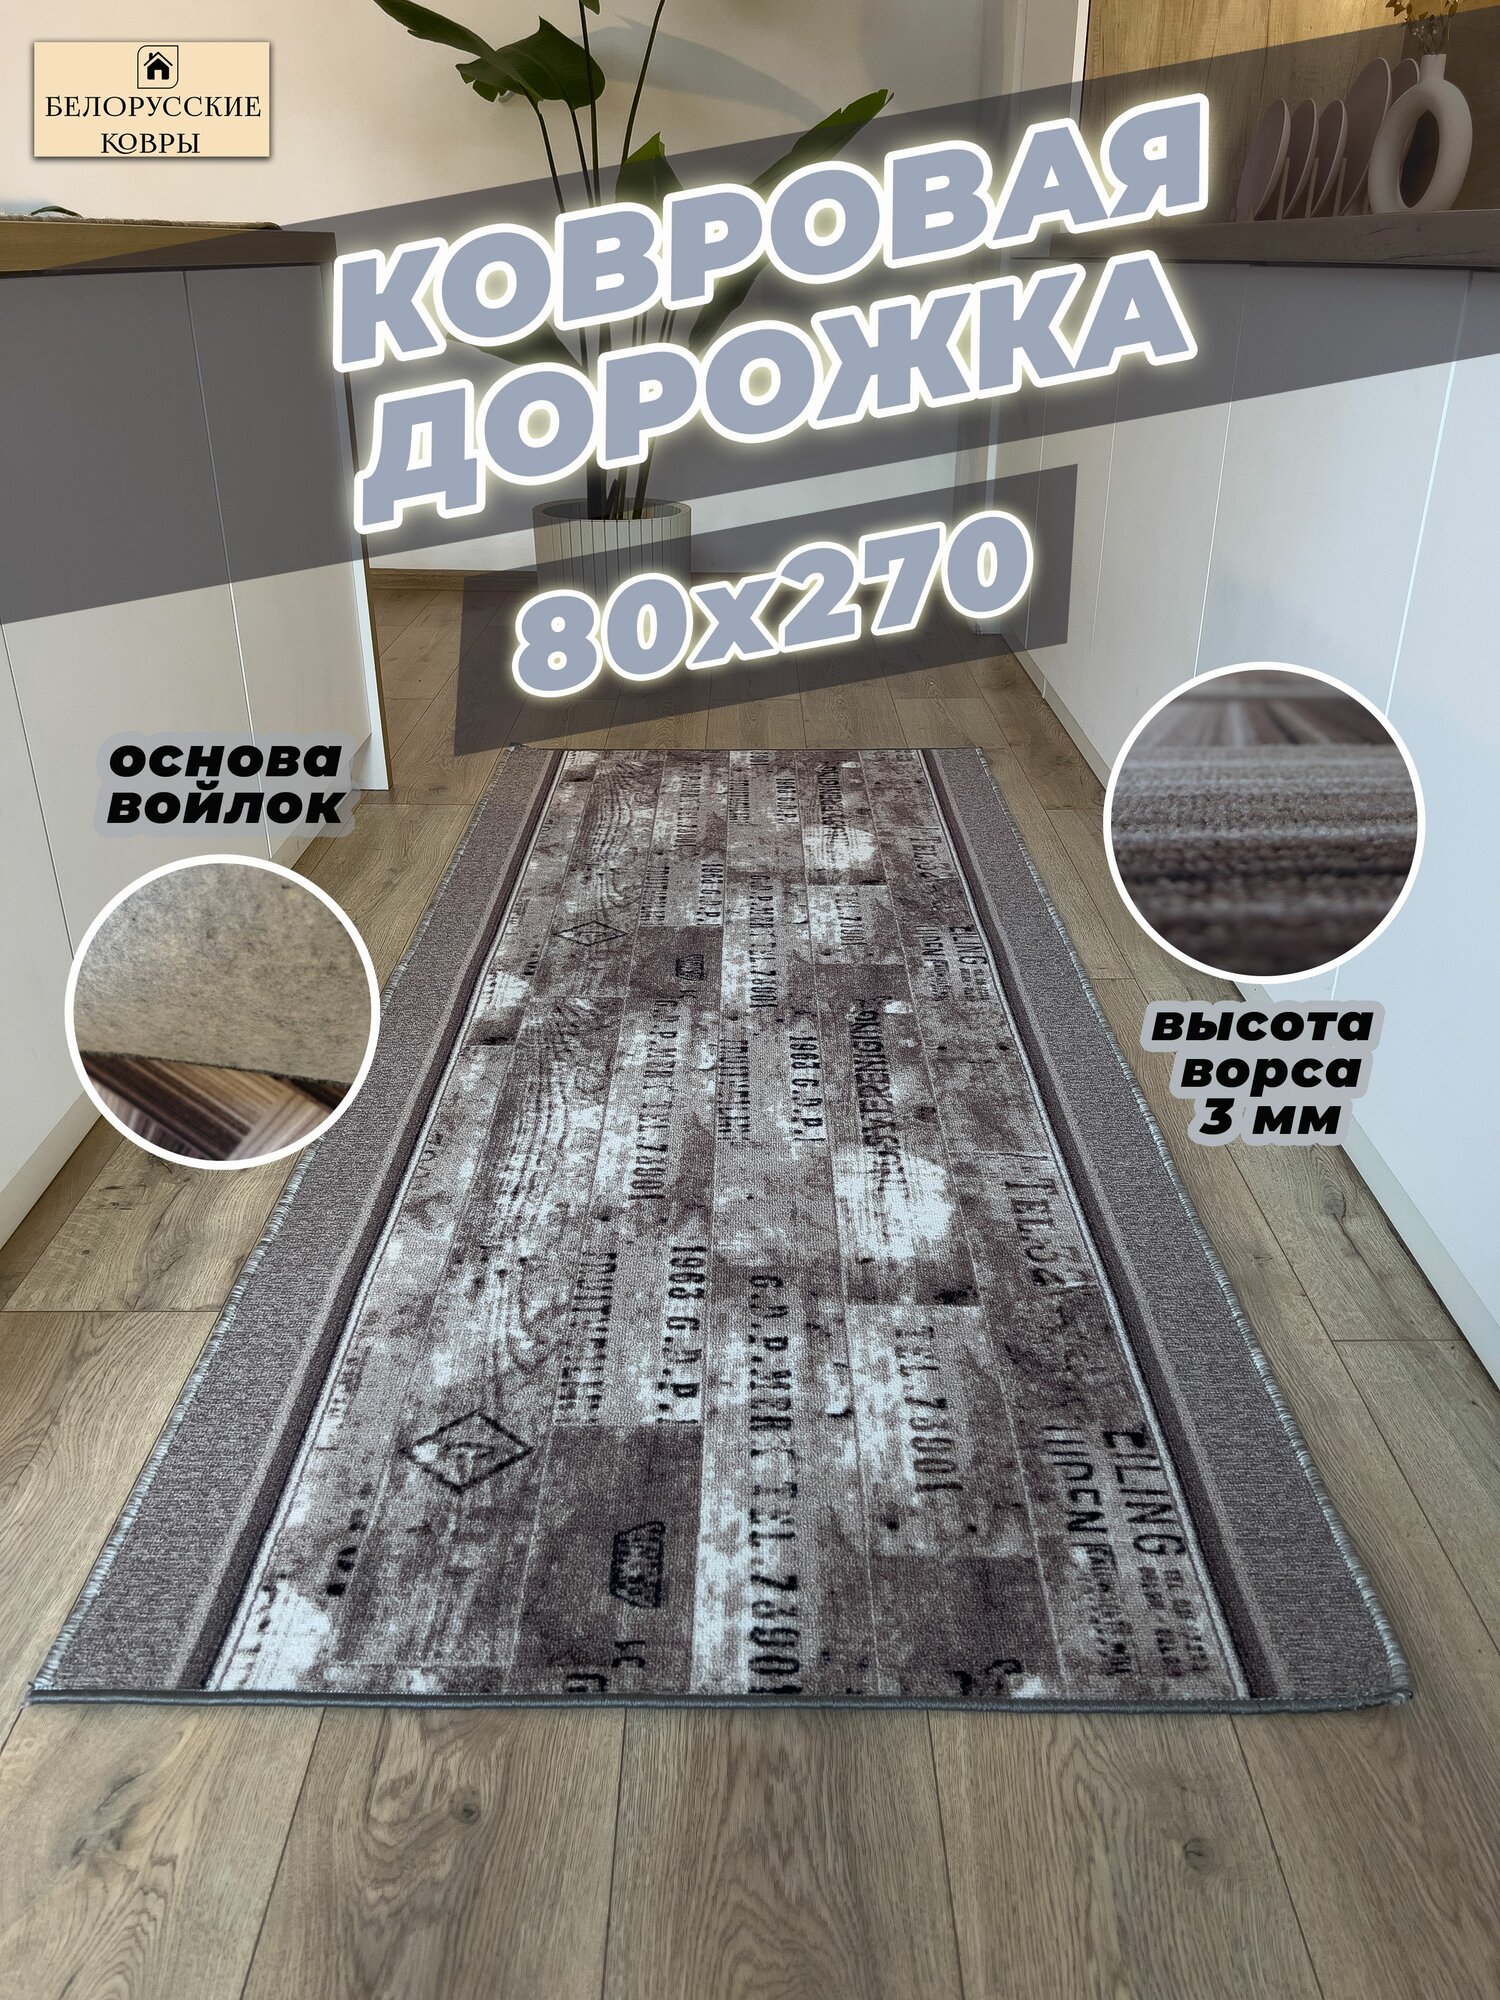 Белорусские ковры, ковровая дорожка 80х270см./0,8х2,7м.